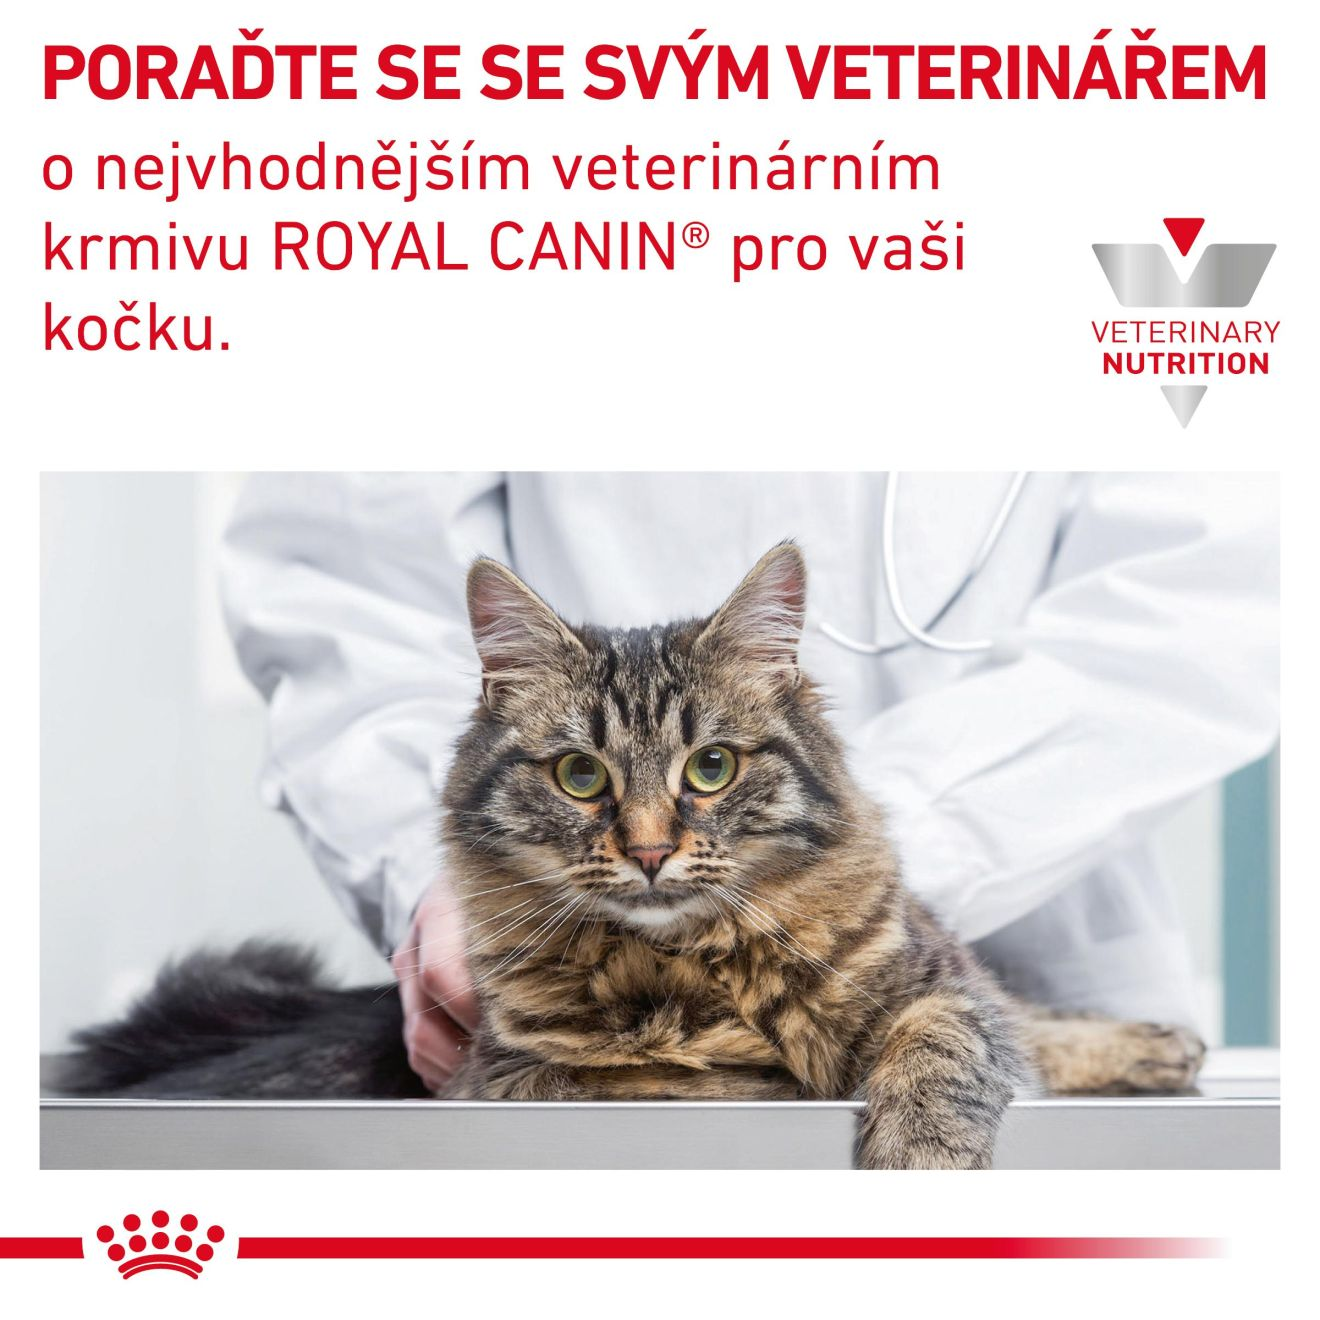 ROYAL CANIN Cat Gastrointestinal Kitten granule pro koťata trpící onemocněním trávicího traktu